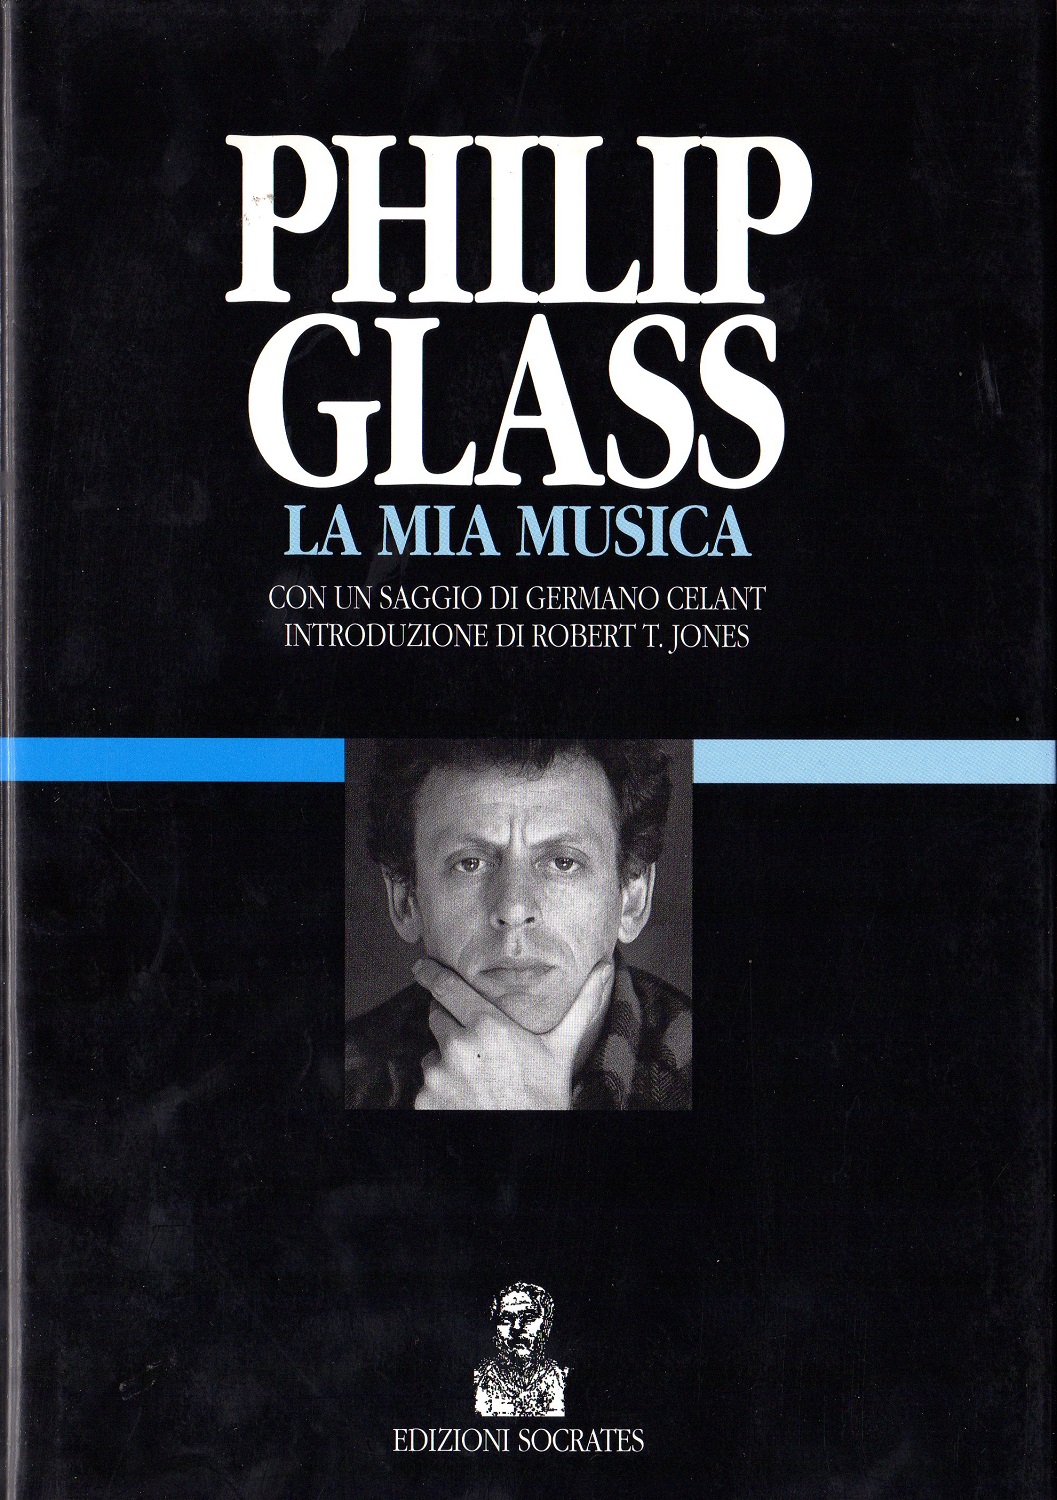 Philip Glass. La mia musica - GLASS, Philip (Baltimora, 1937)